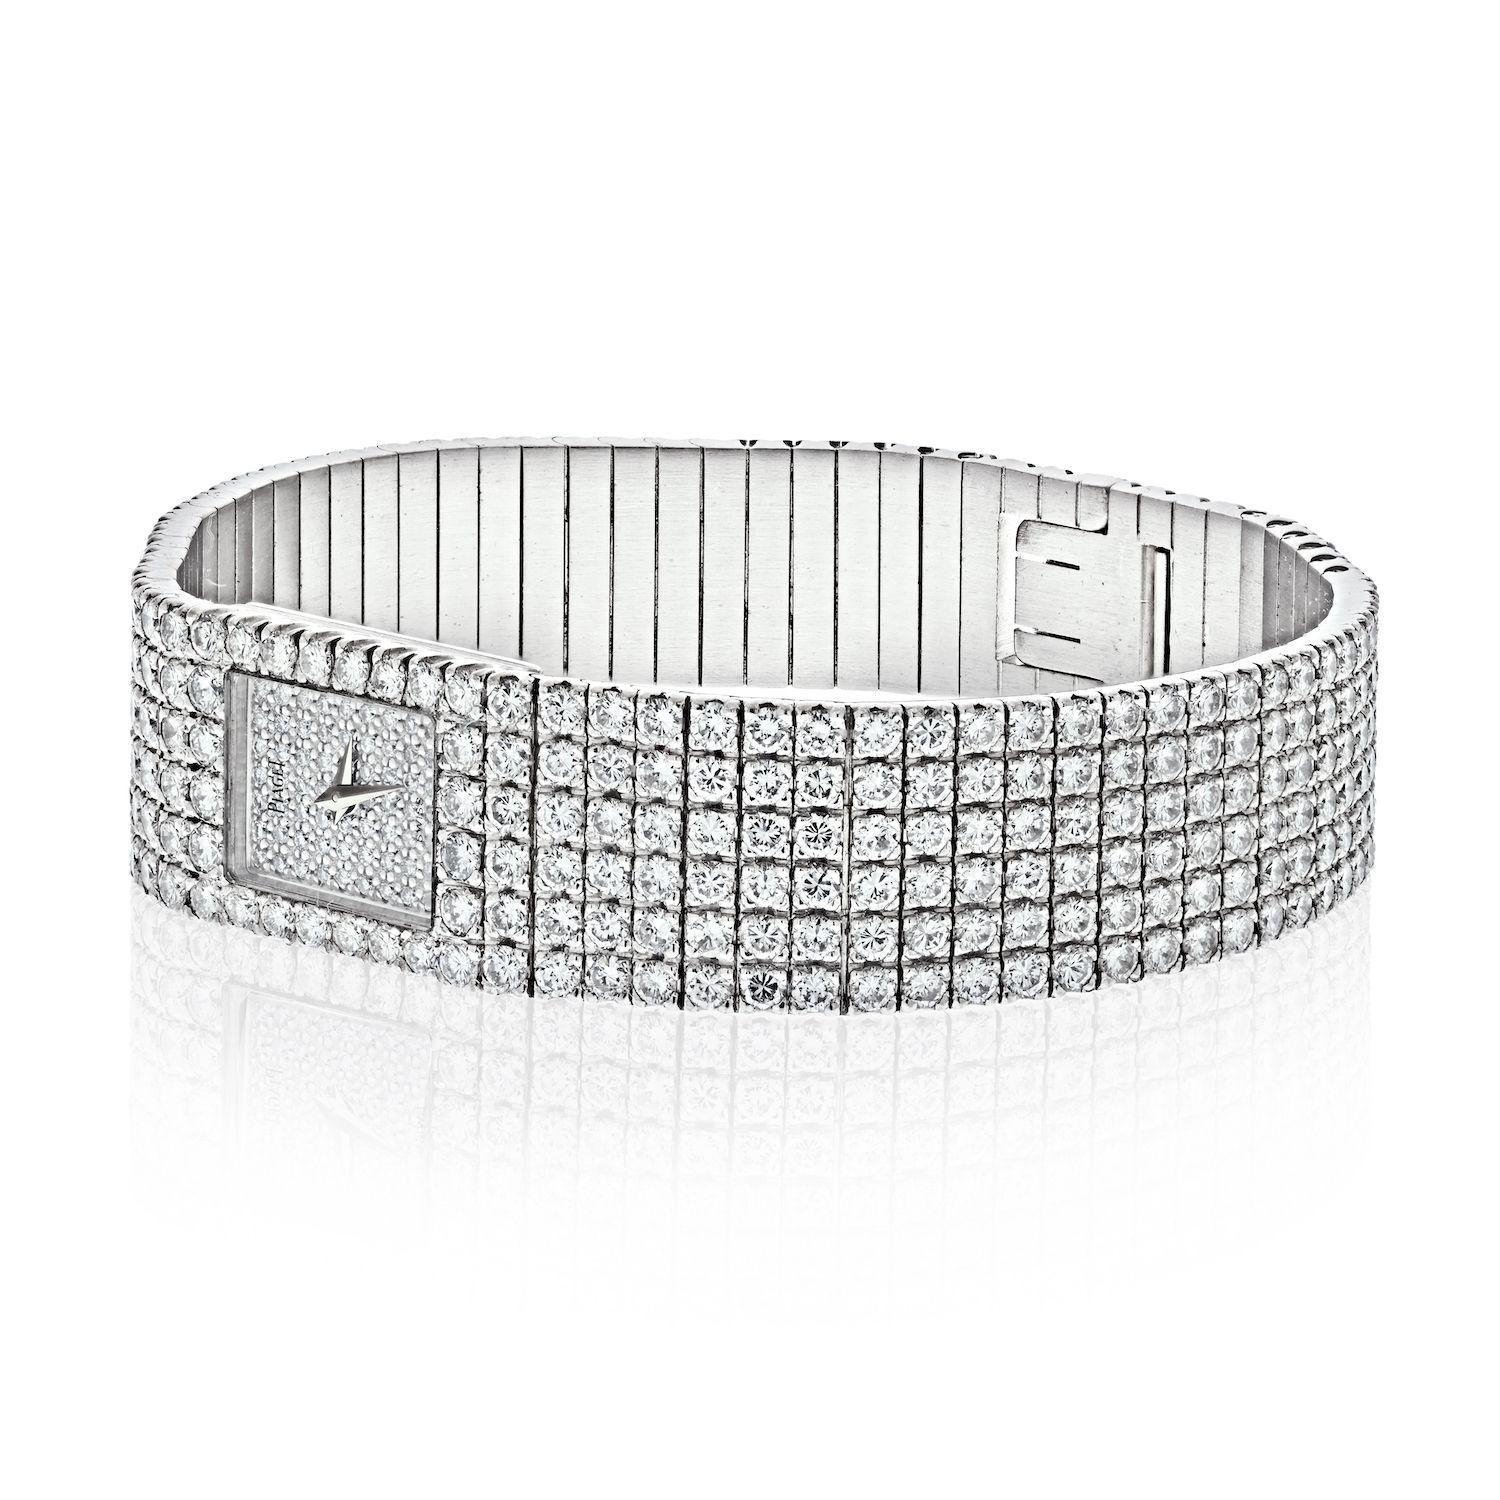 Cette montre Piaget POLO du 21ème siècle, entièrement en diamants et en parfait état, est la pièce glamour par excellence.
Comprenant tous les diamants originaux sertis en usine, environ 20,00 carats, E-F, couleur VVS Clarté.
Cette montre Piaget à